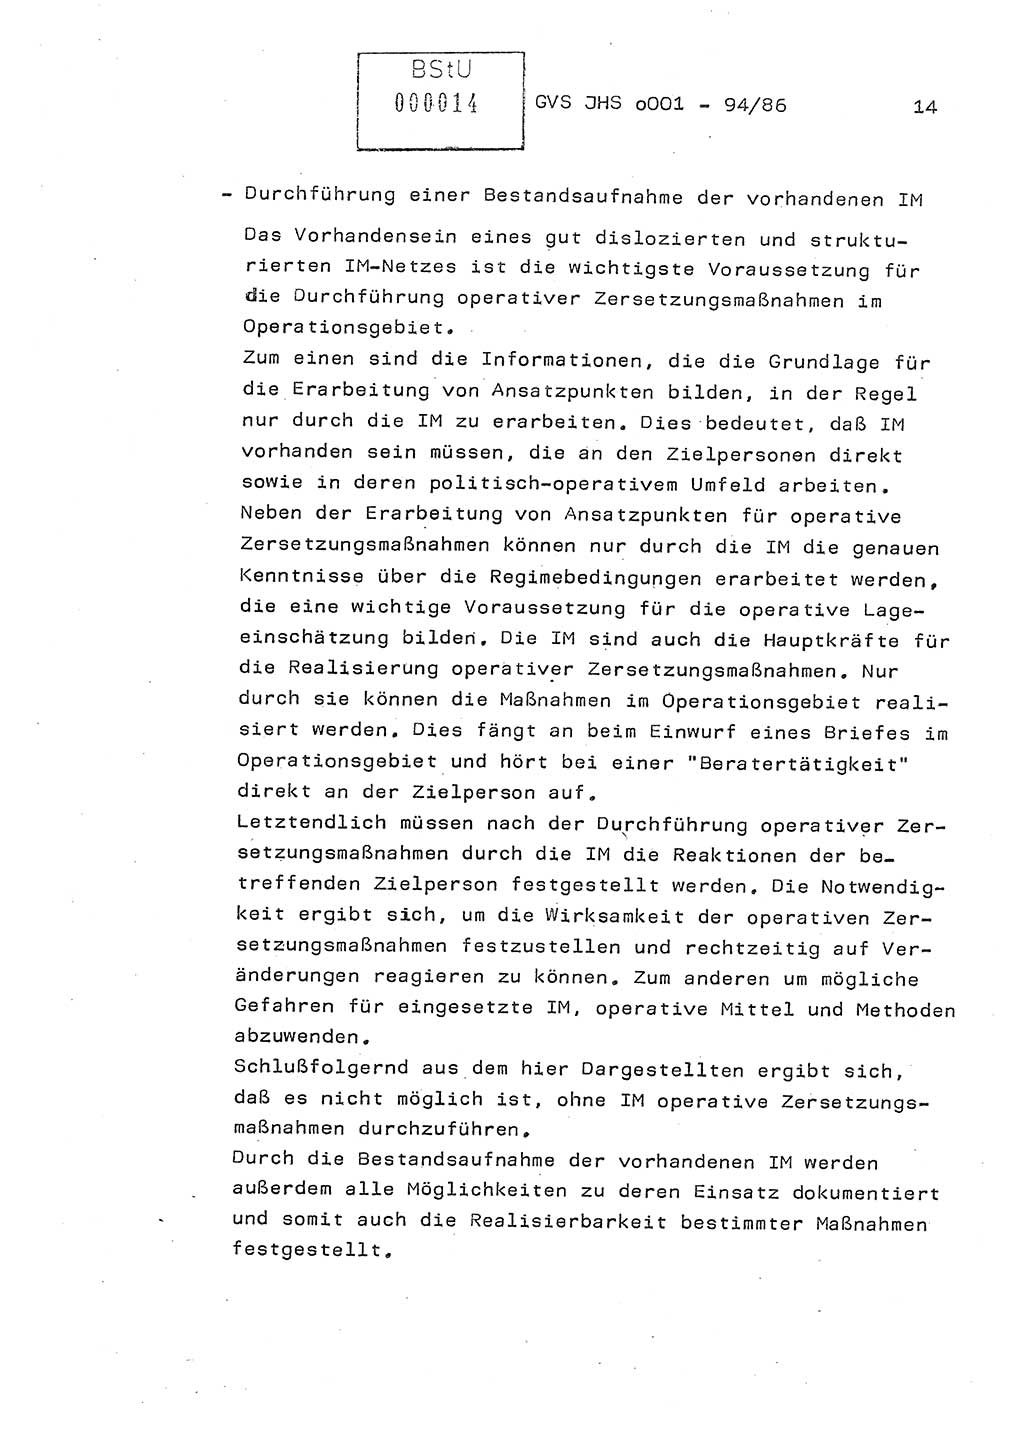 Diplomarbeit Oberleutnant Volkmar Pechmann (HA ⅩⅩ/5), Ministerium für Staatssicherheit (MfS) [Deutsche Demokratische Republik (DDR)], Juristische Hochschule (JHS), Geheime Verschlußsache (GVS) o001-94/86, Potsdam 1986, Blatt 14 (Dipl.-Arb. MfS DDR JHS GVS o001-94/86 1986, Bl. 14)